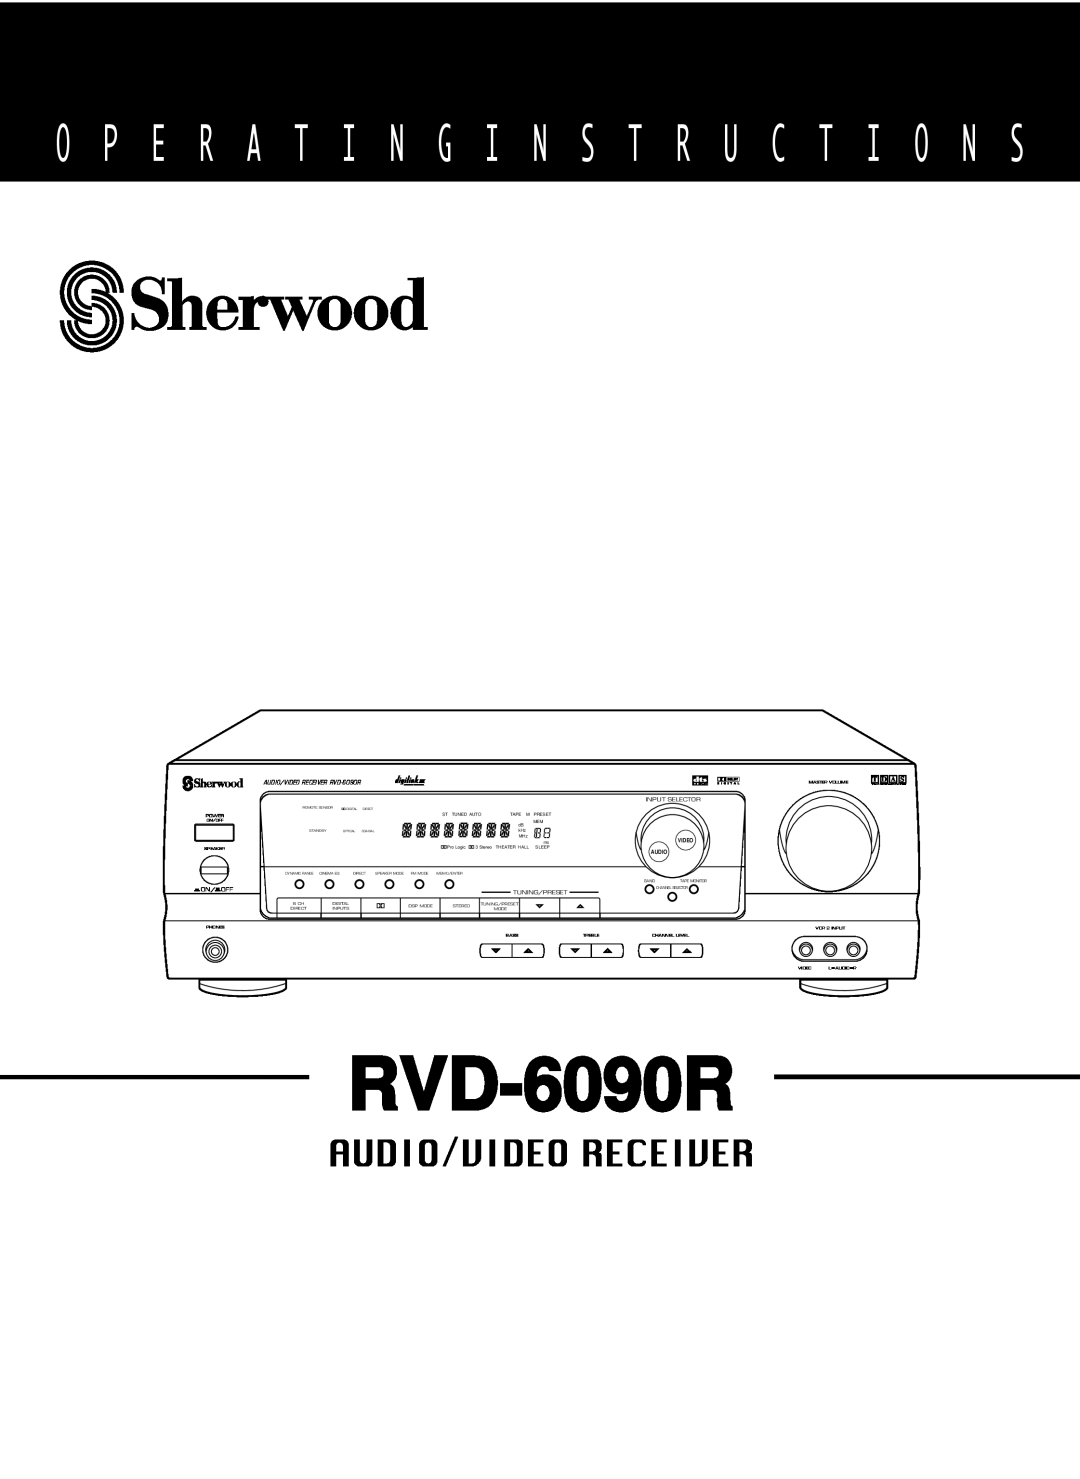 Sherwood RVD-6090R operating instructions O P E R A T I N G I N S T R U C T I O N S, Audio/Video Receiver, Tdas 